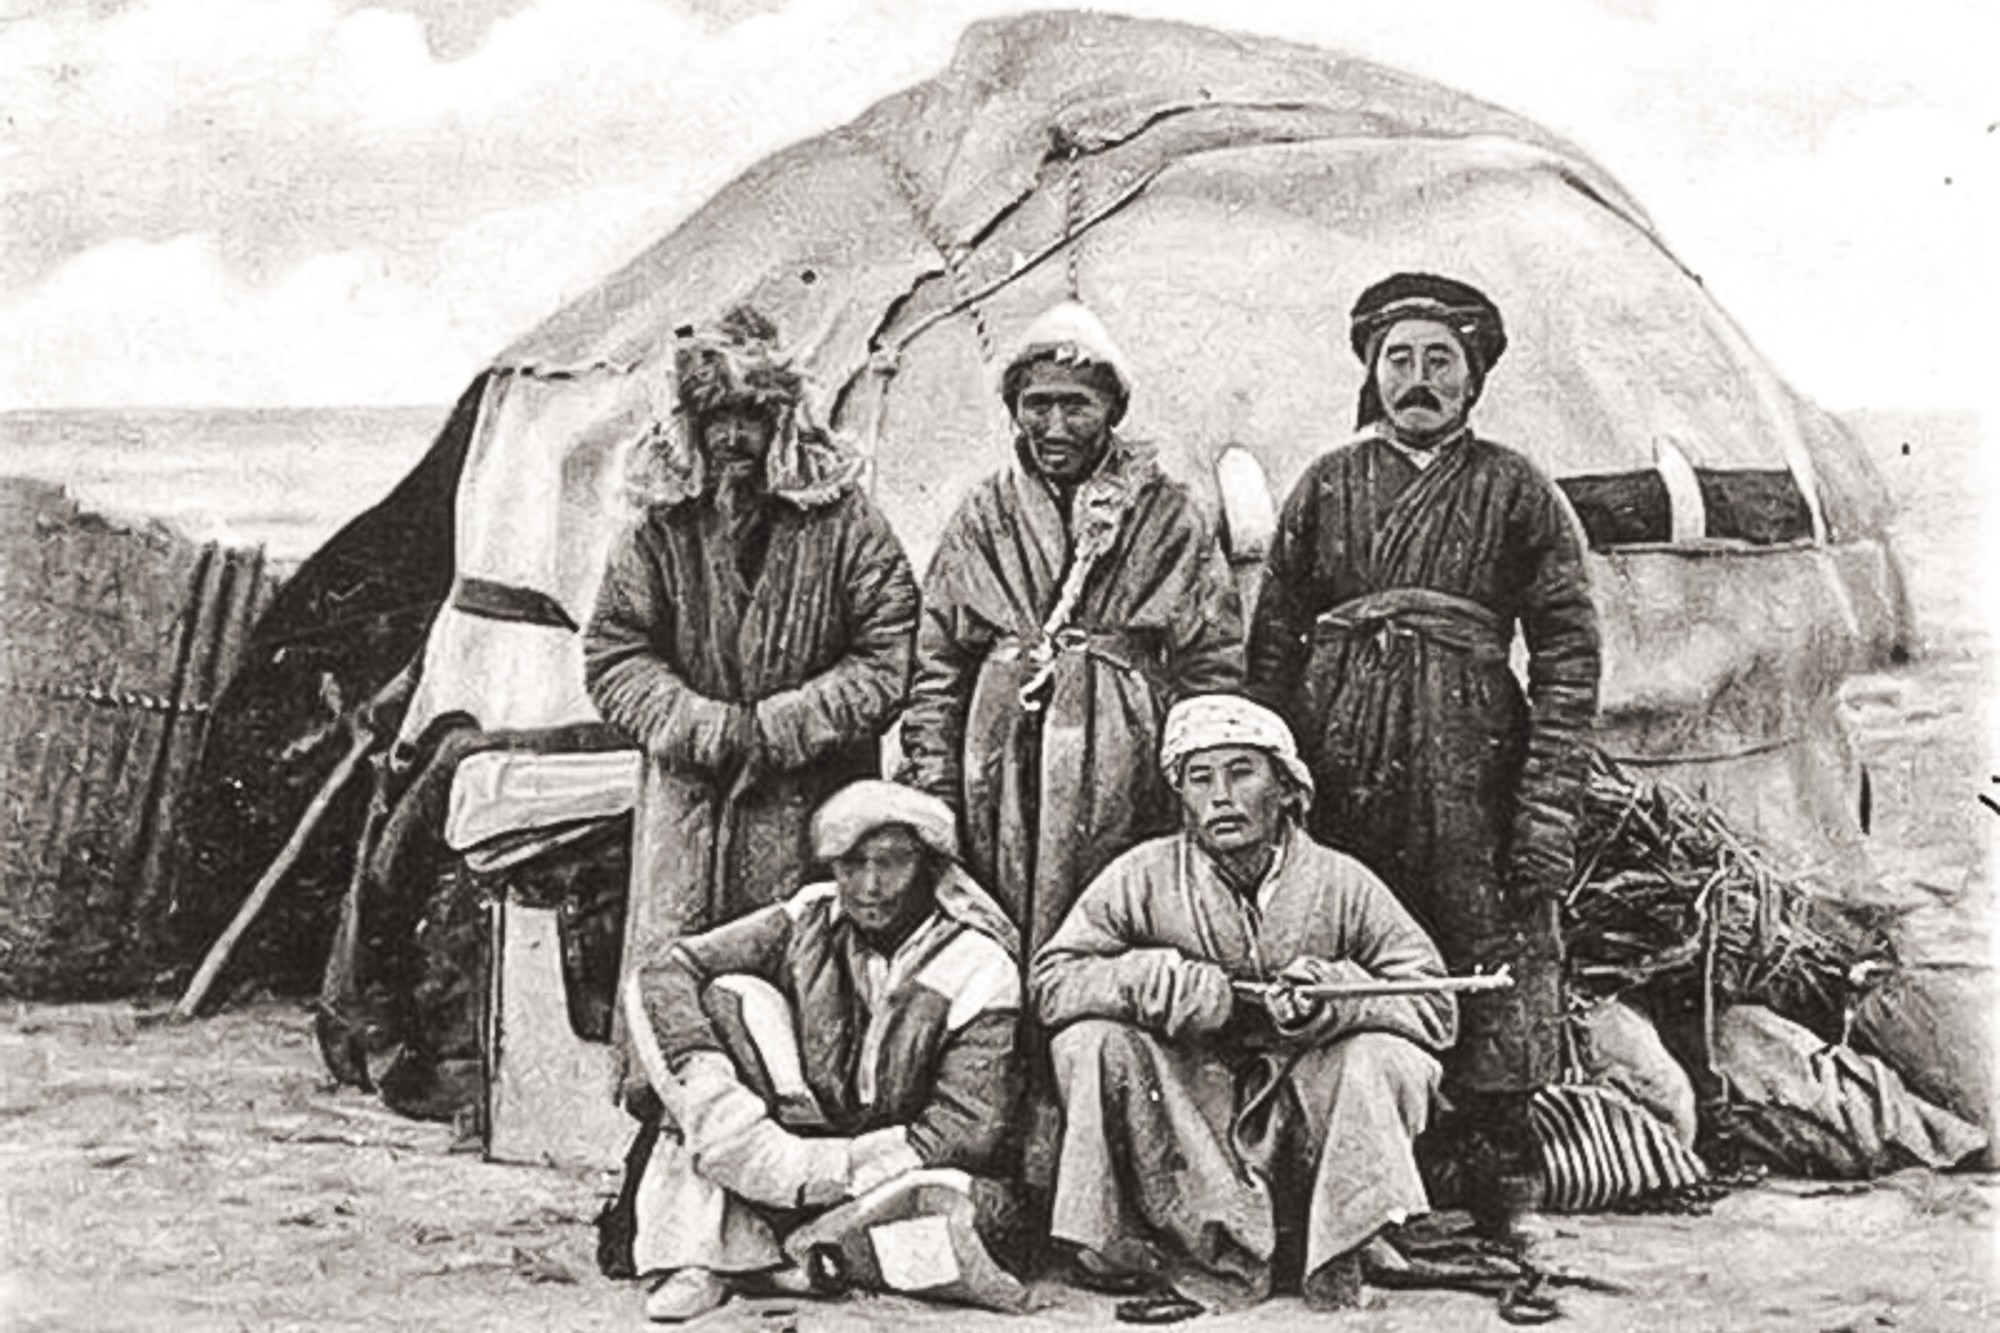 История киргизов. Юрты алтайцев 19 век. Киргизские кочевники 19 век. Киргизы Азии 19 век. Казахская степь 19 век.